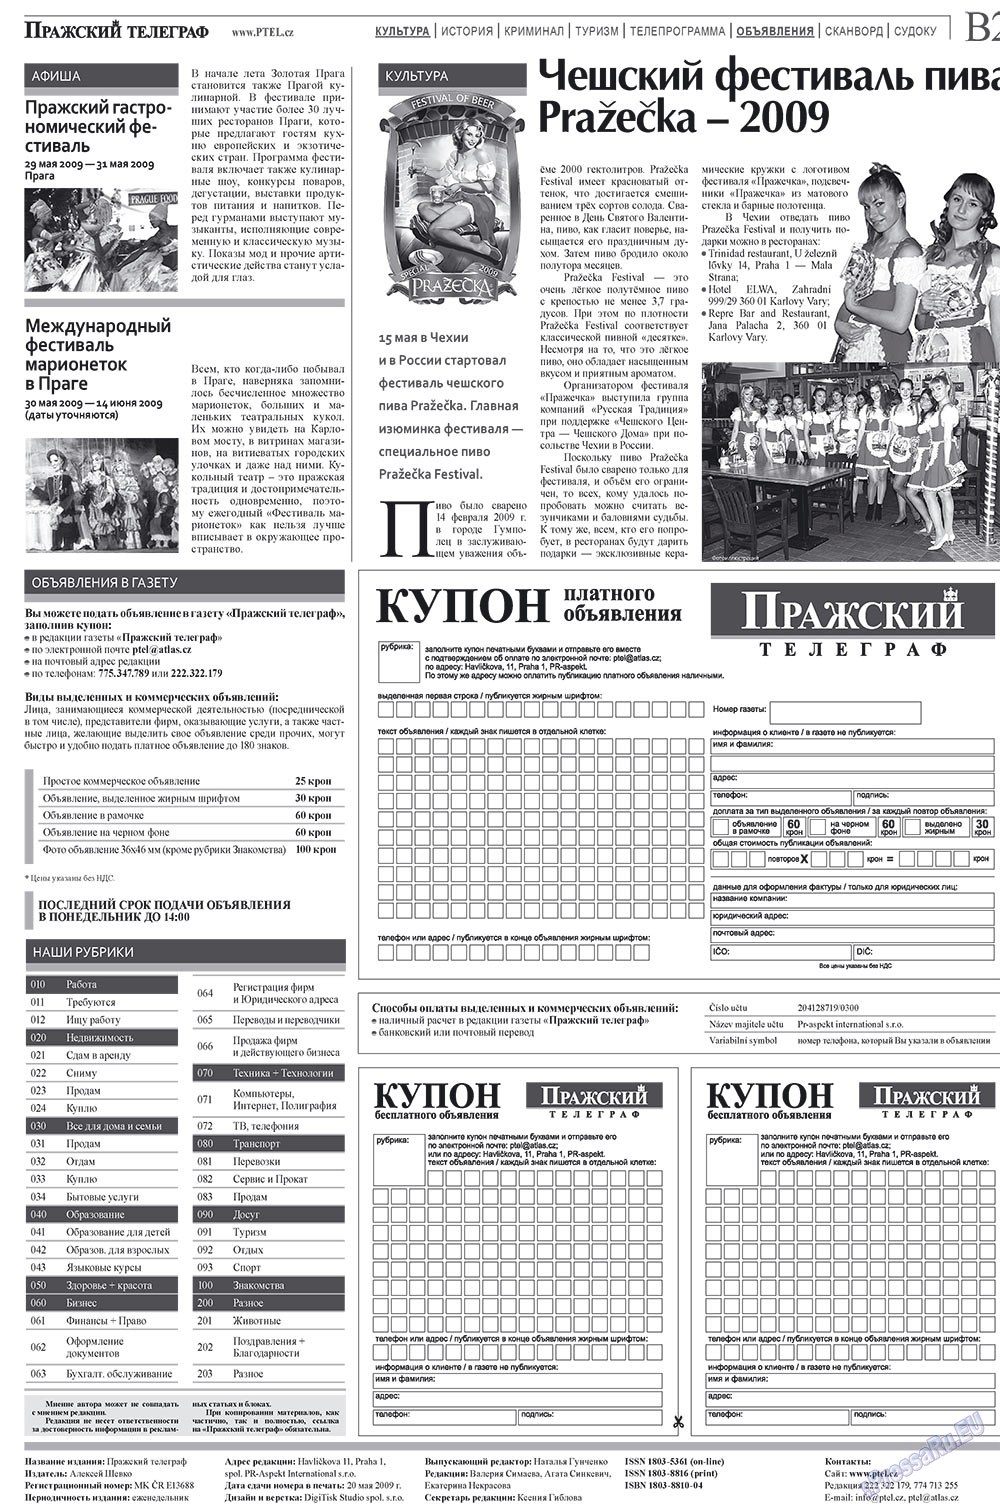 Prazhski telegraf (Zeitung). 2009 Jahr, Ausgabe 6, Seite 10